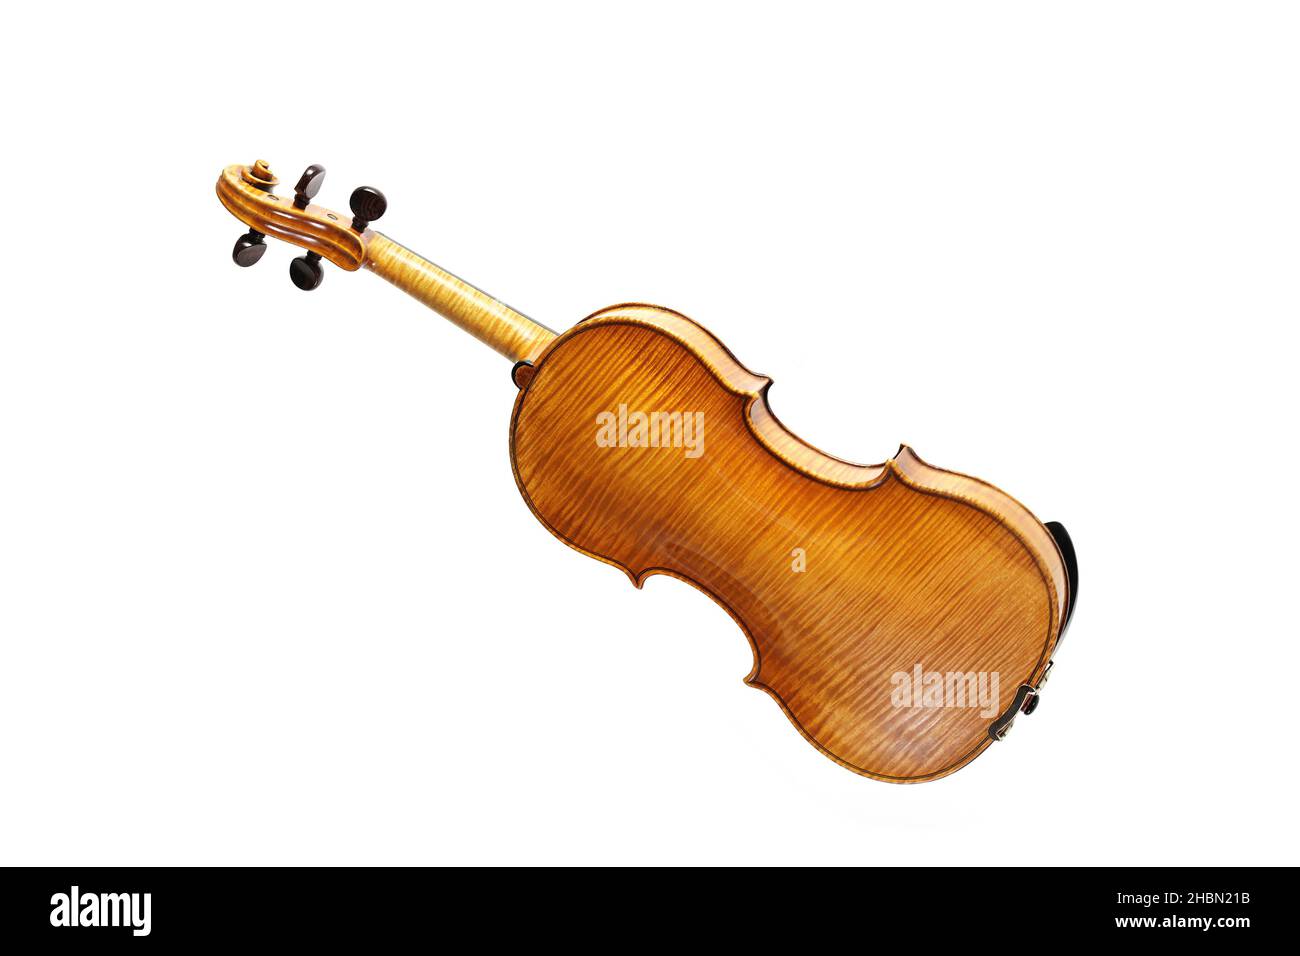 Violín de detrás mostrando el grano de madera, también llamado violín, instrumento musical de cuerda de la familia del viol, aislado sobre un fondo blanco, copia Foto de stock